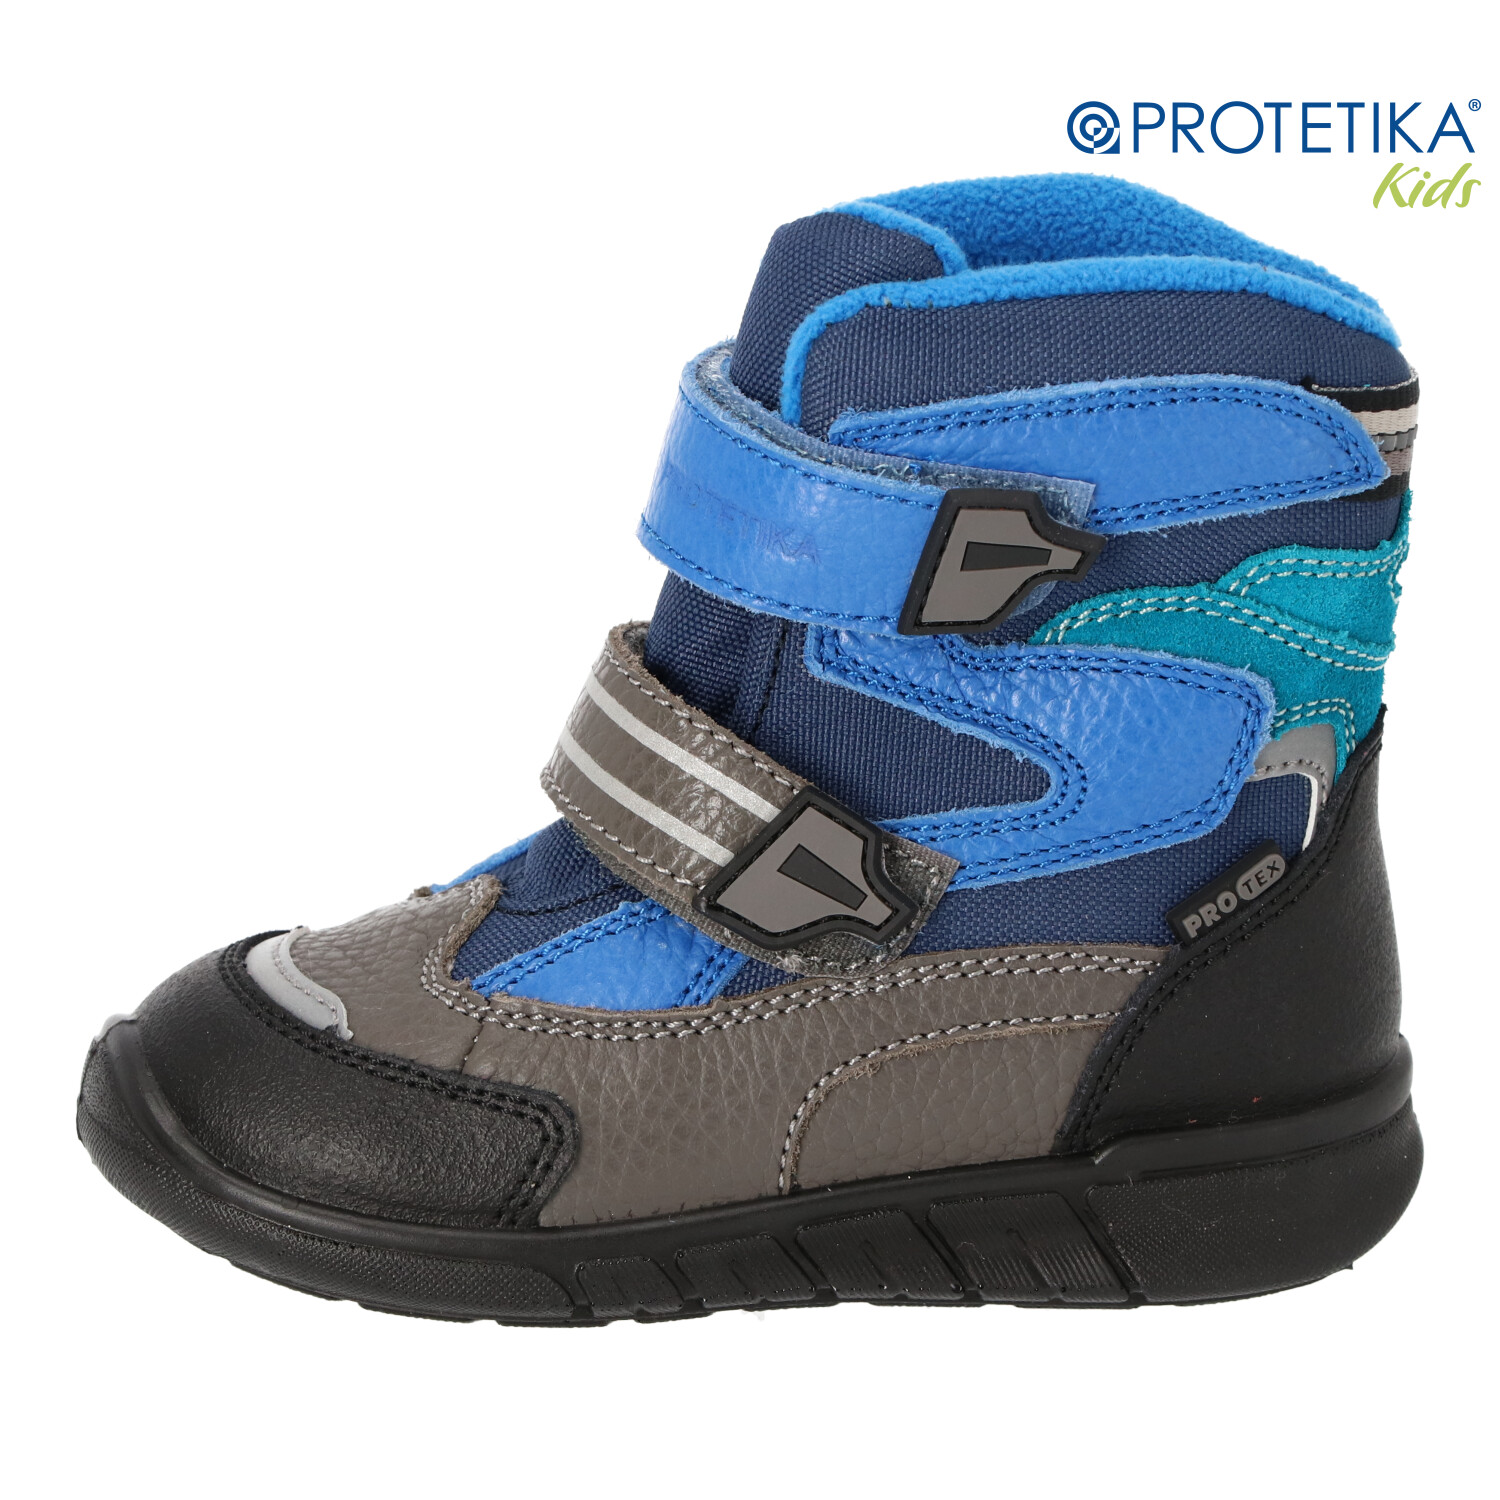 Protetika - zimné topánky s membránou PRO-tex MARON blue - zateplené